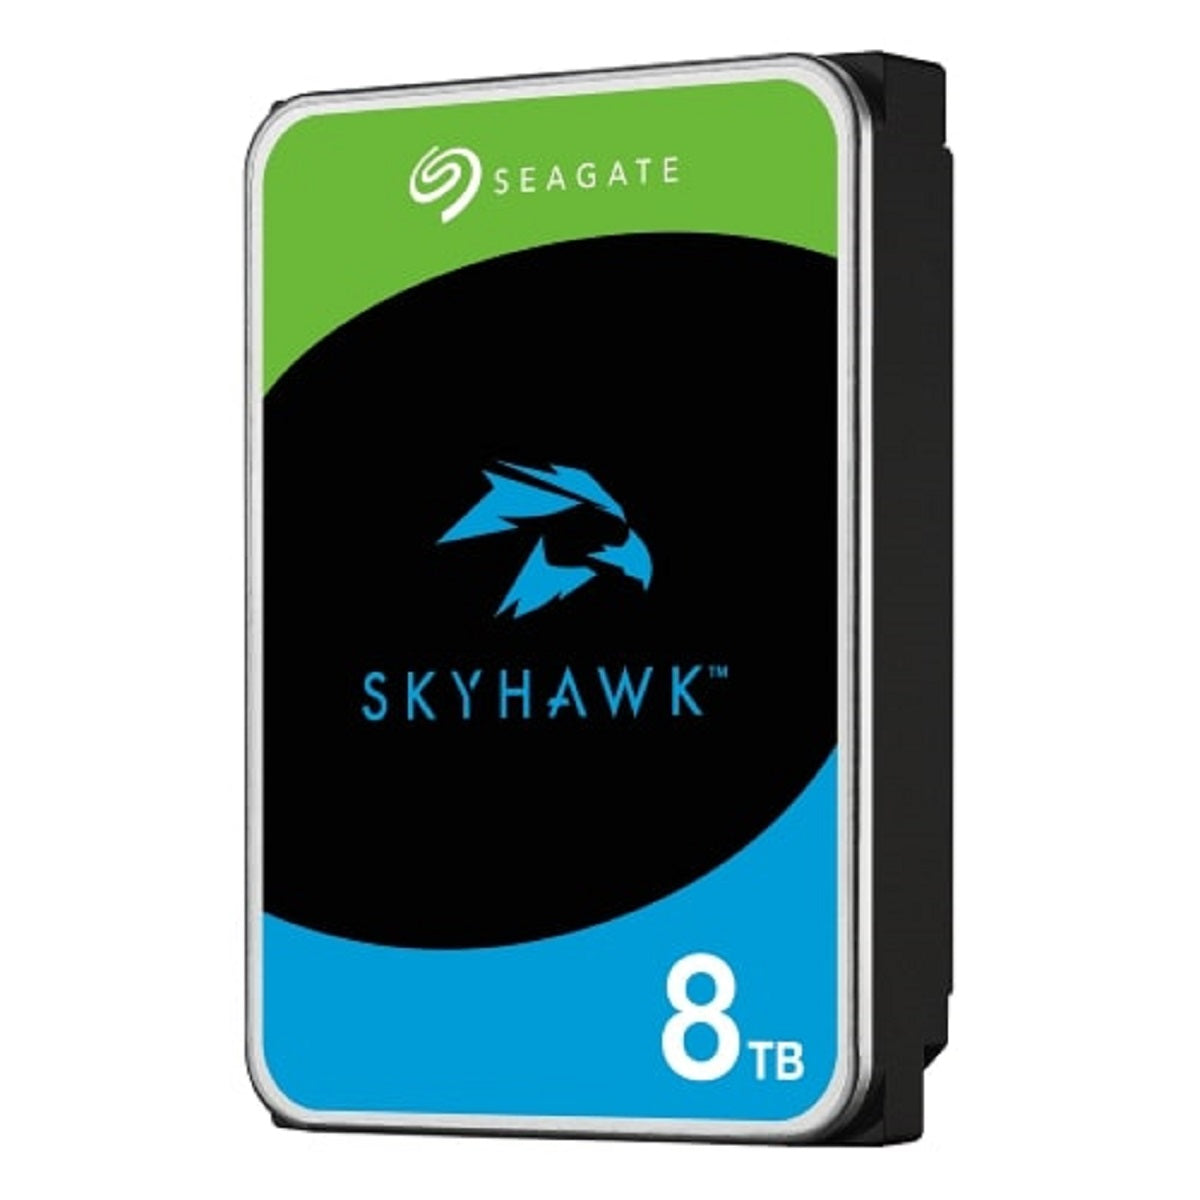 Seagate ST8000VX010 SkyHawk 8TB SATA Hard Drive